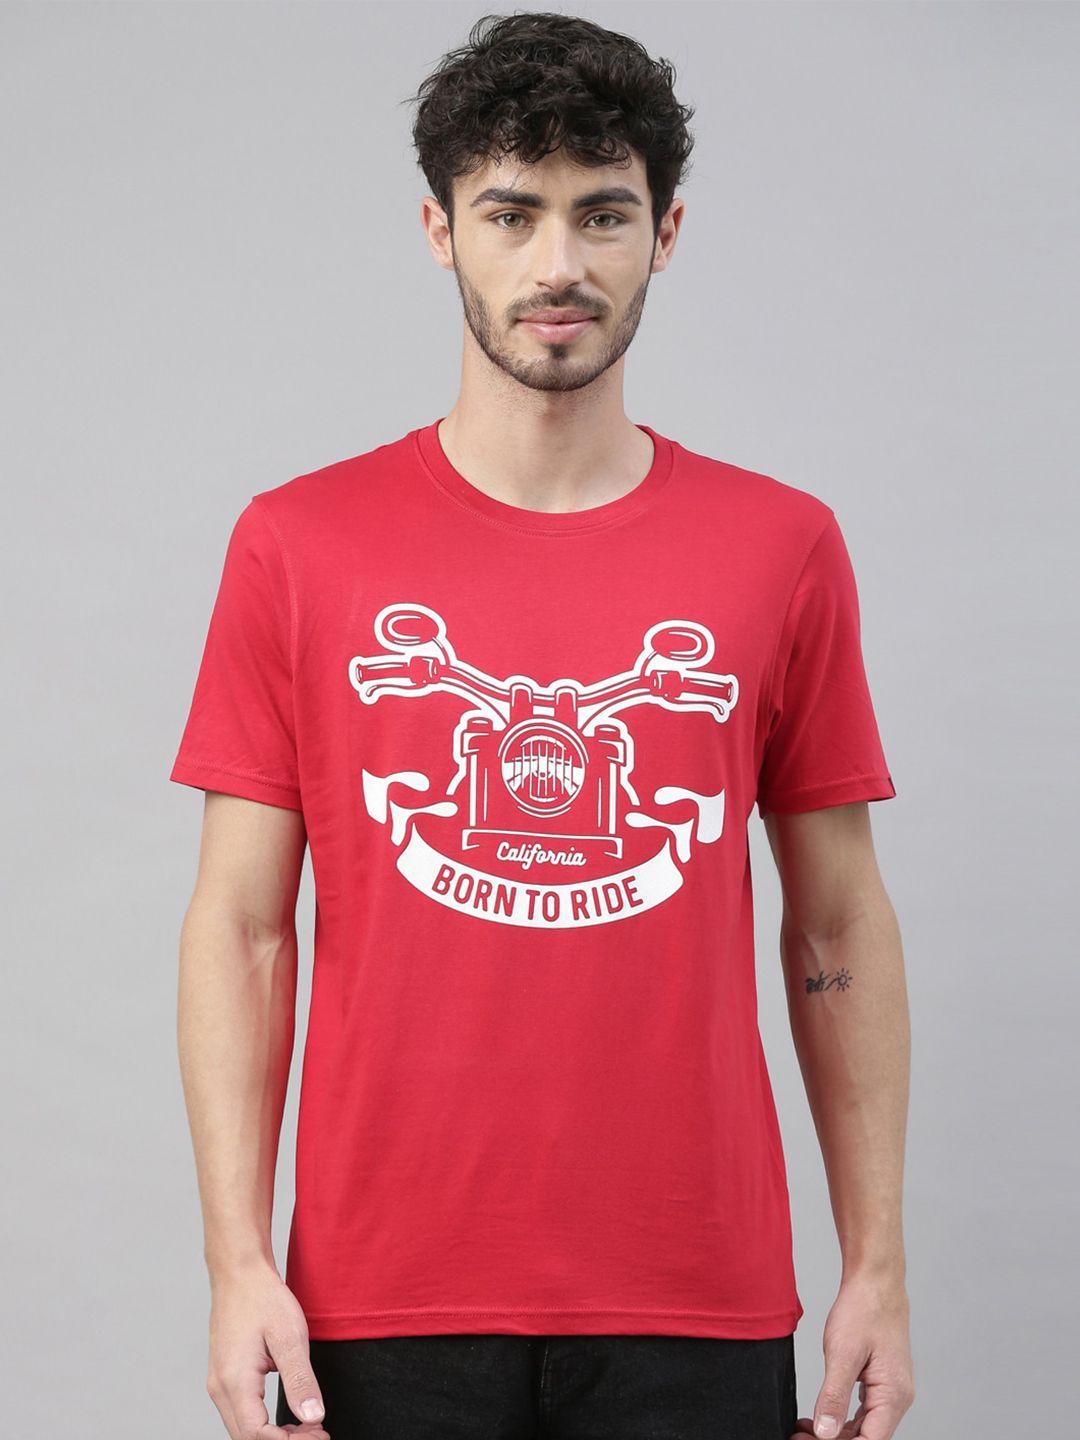 bushirt men red printed round neck t-shirt